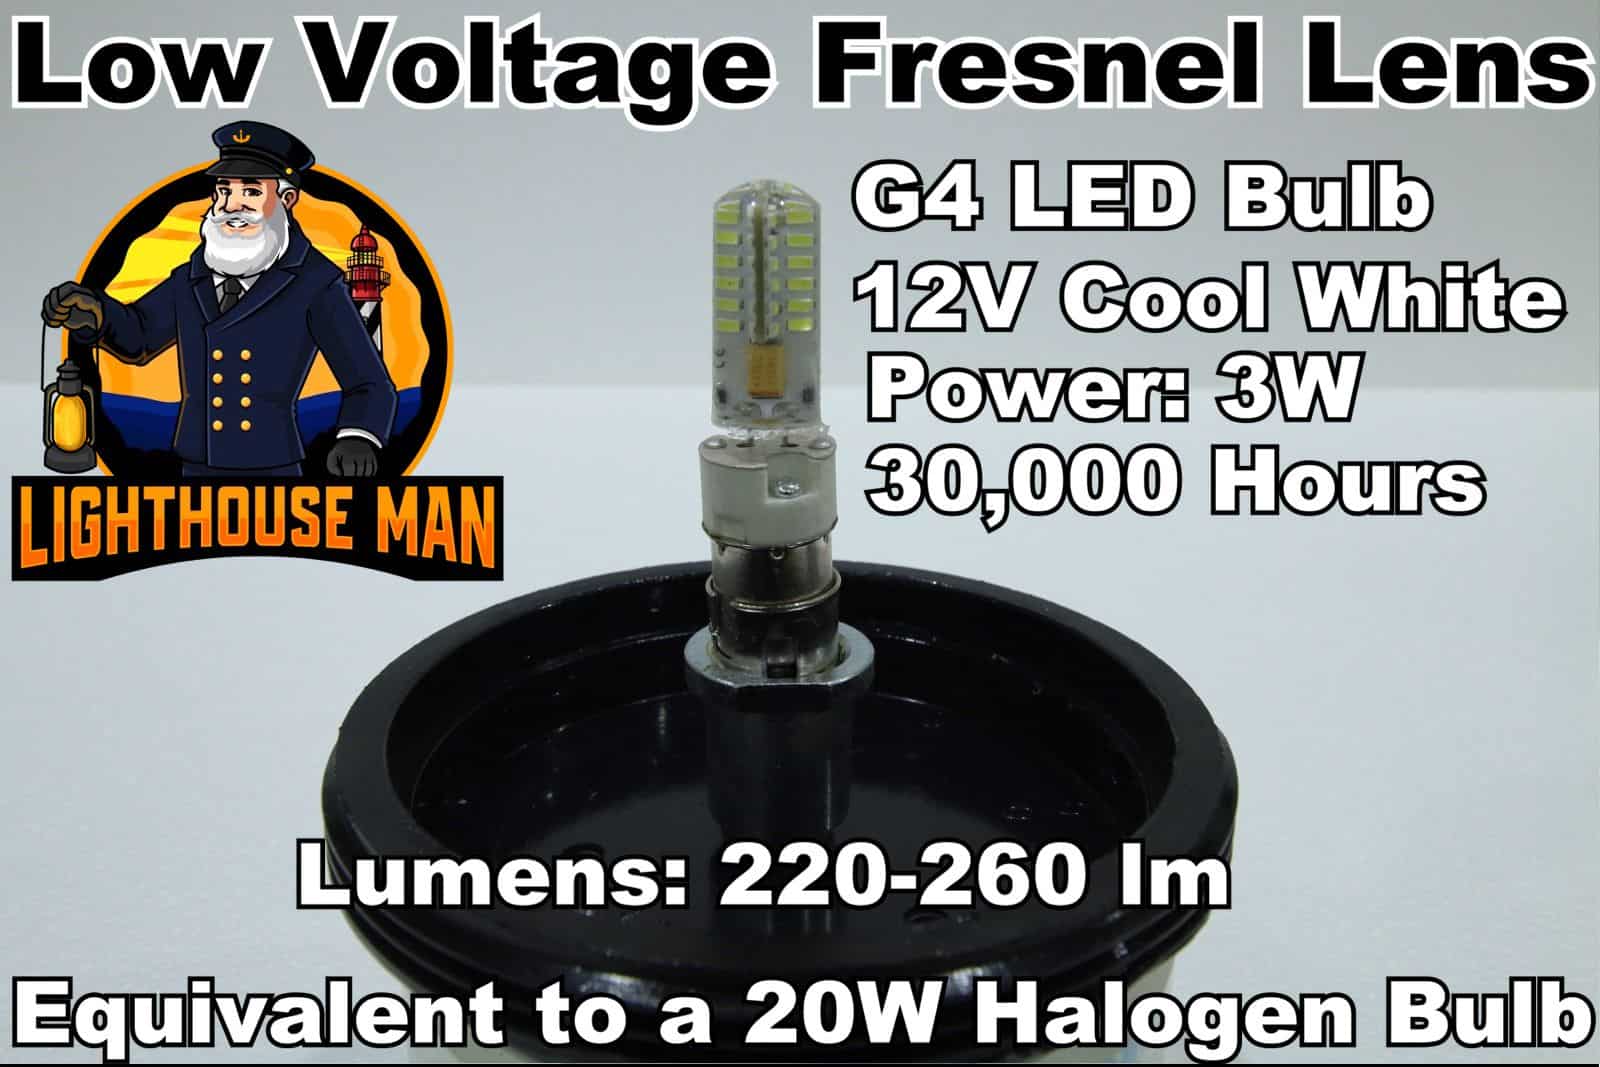 LED Bulb for Low Voltage Fresnel Lens